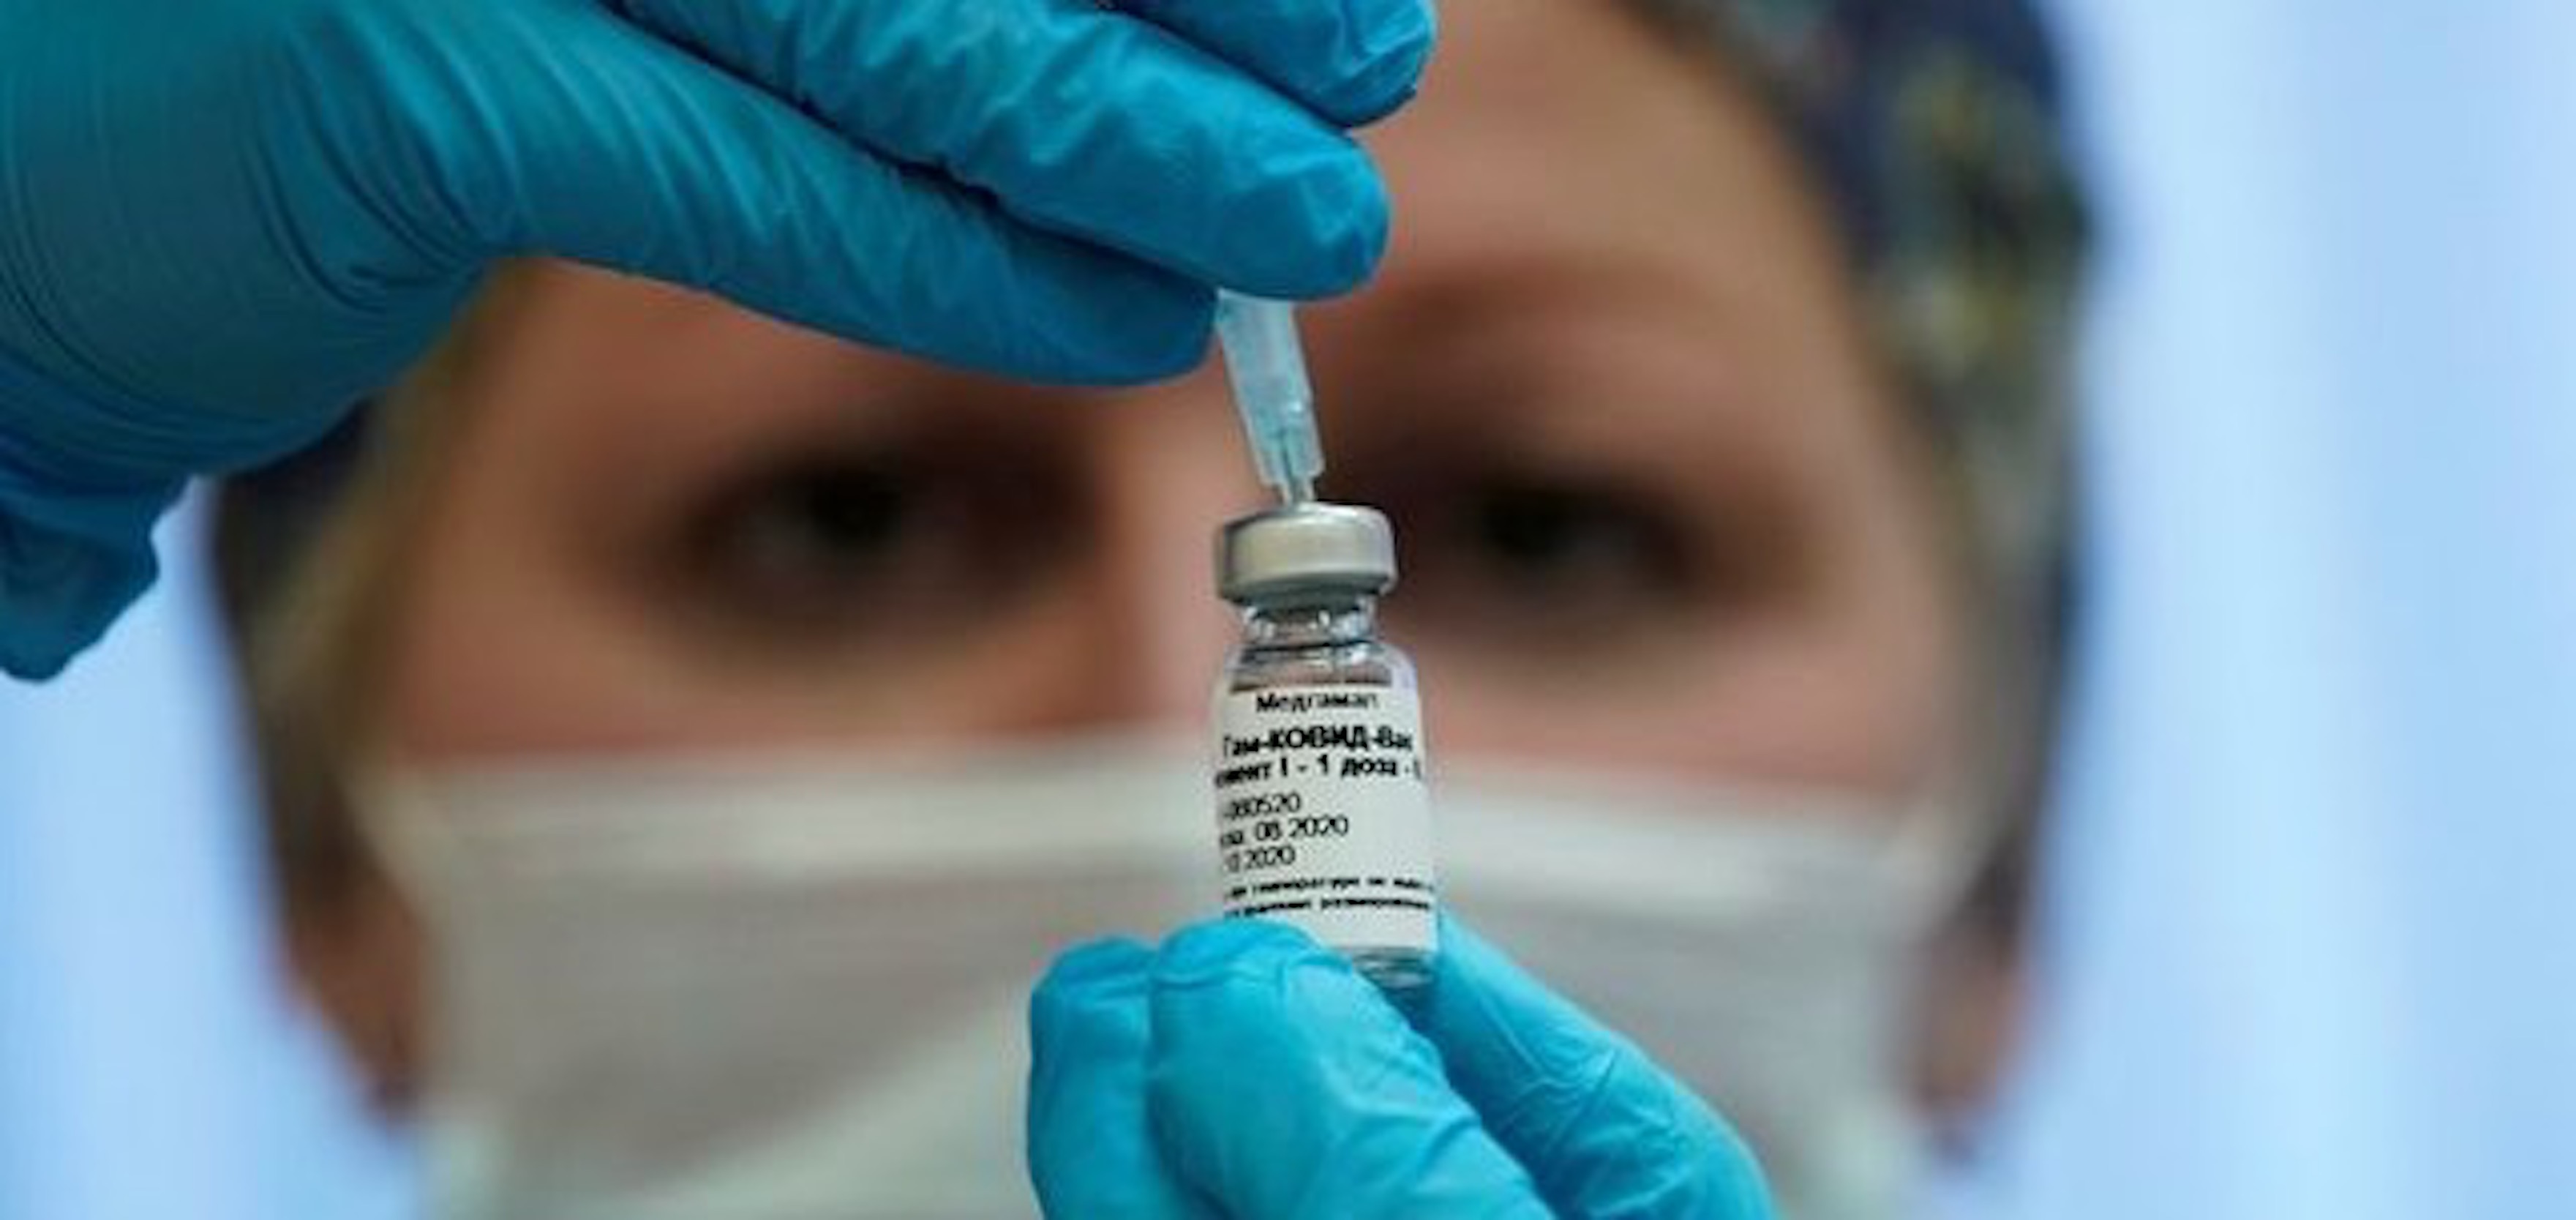 Venezuela to Receive Russian Covid-19 Vaccine 